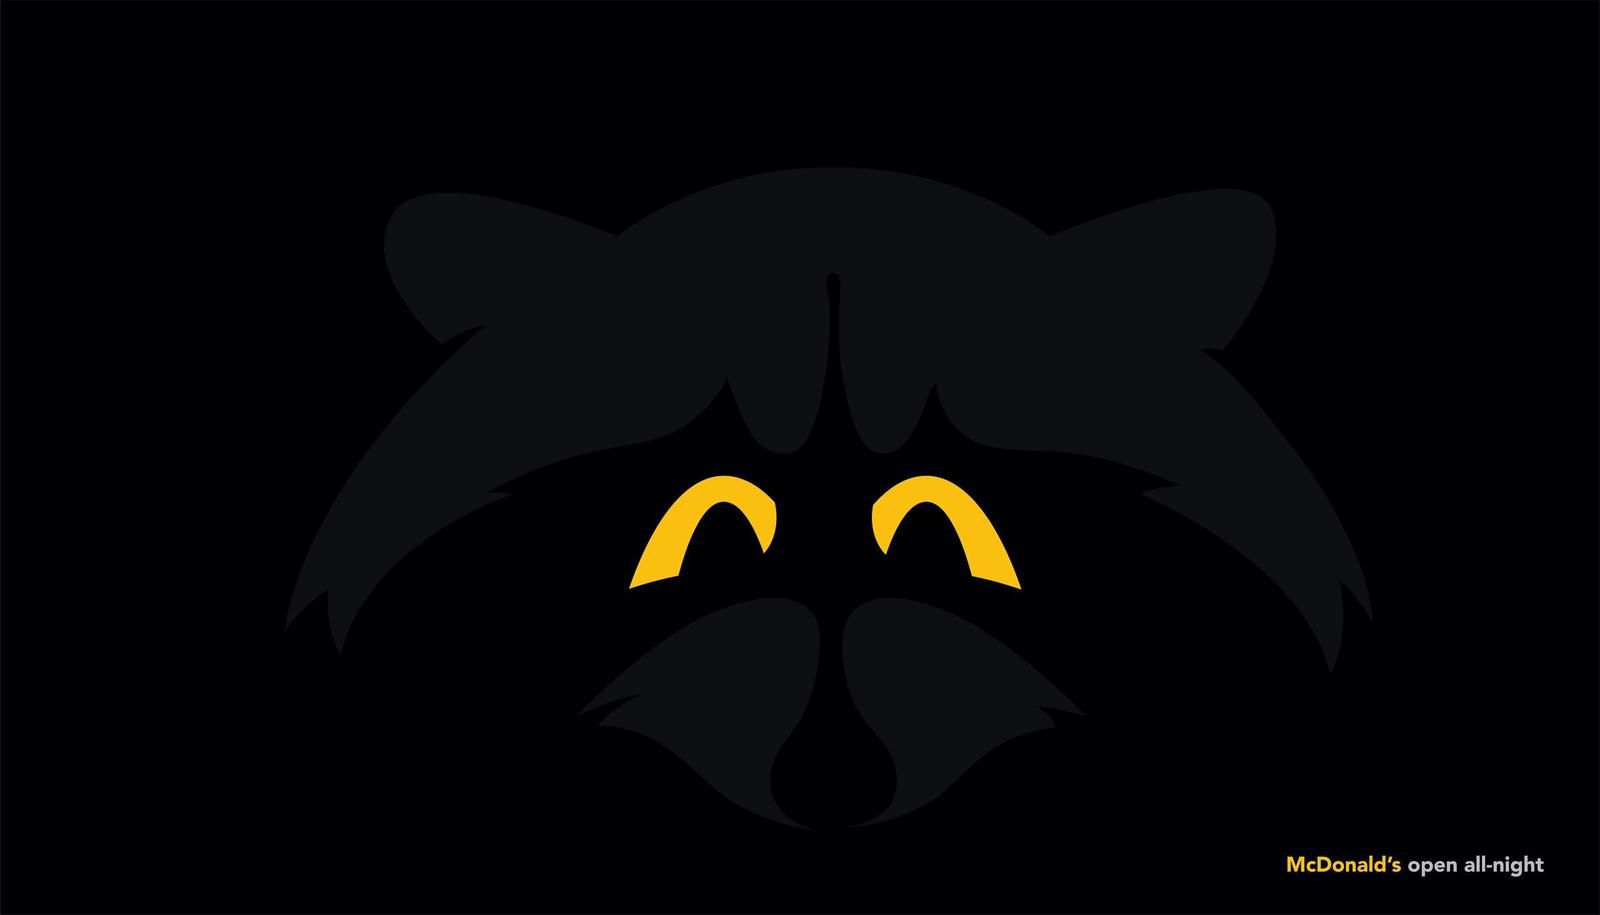 McDonald's : I Agence : (février 2019)